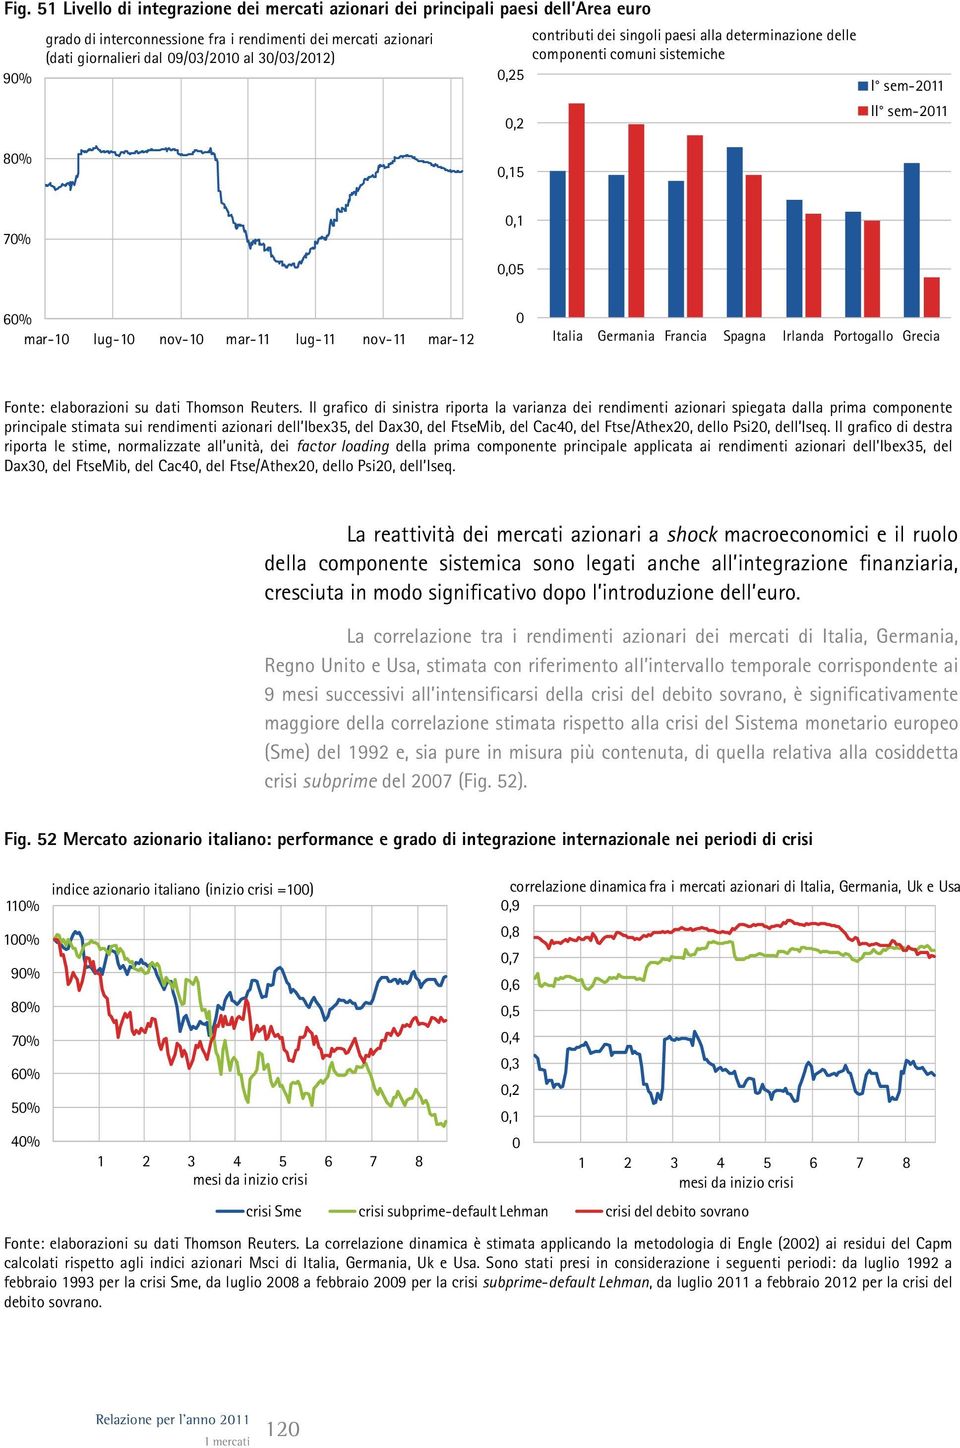 Francia Spagna Irlanda Portogallo Grecia Fonte: elaborazioni su dati Thomson Reuters.